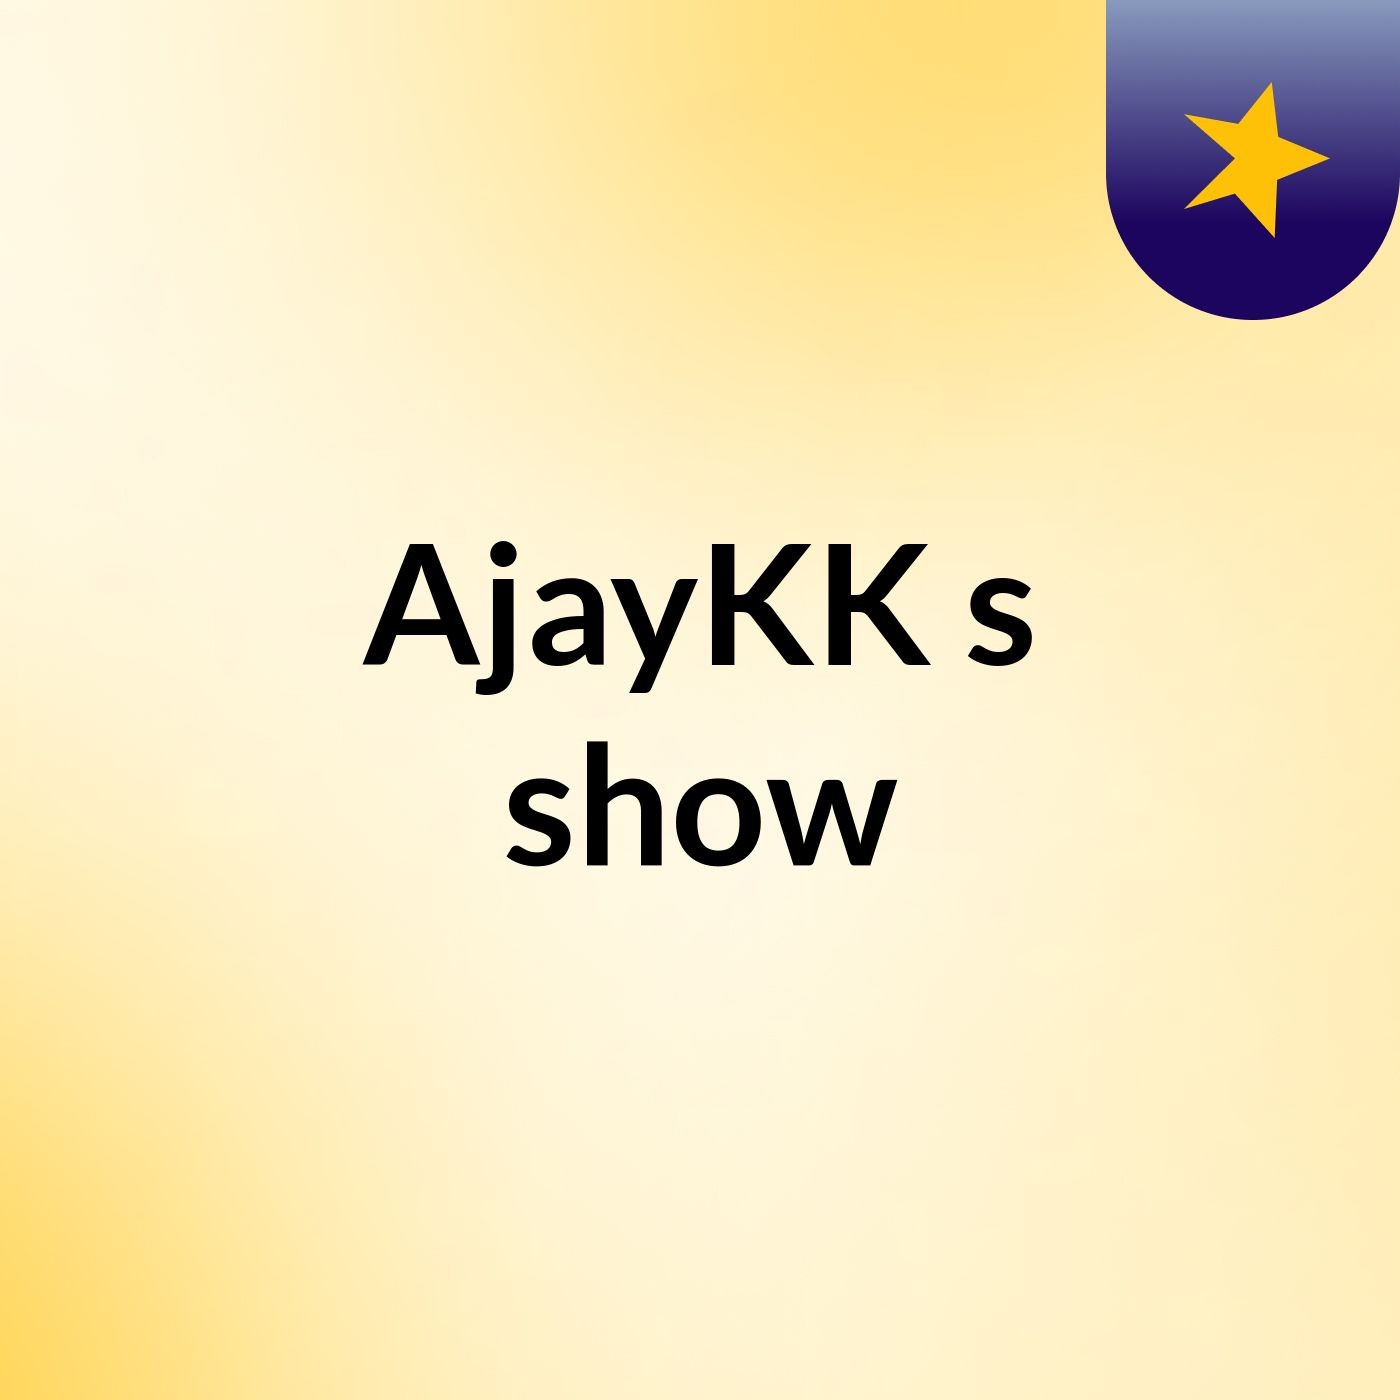 AjayKK's show